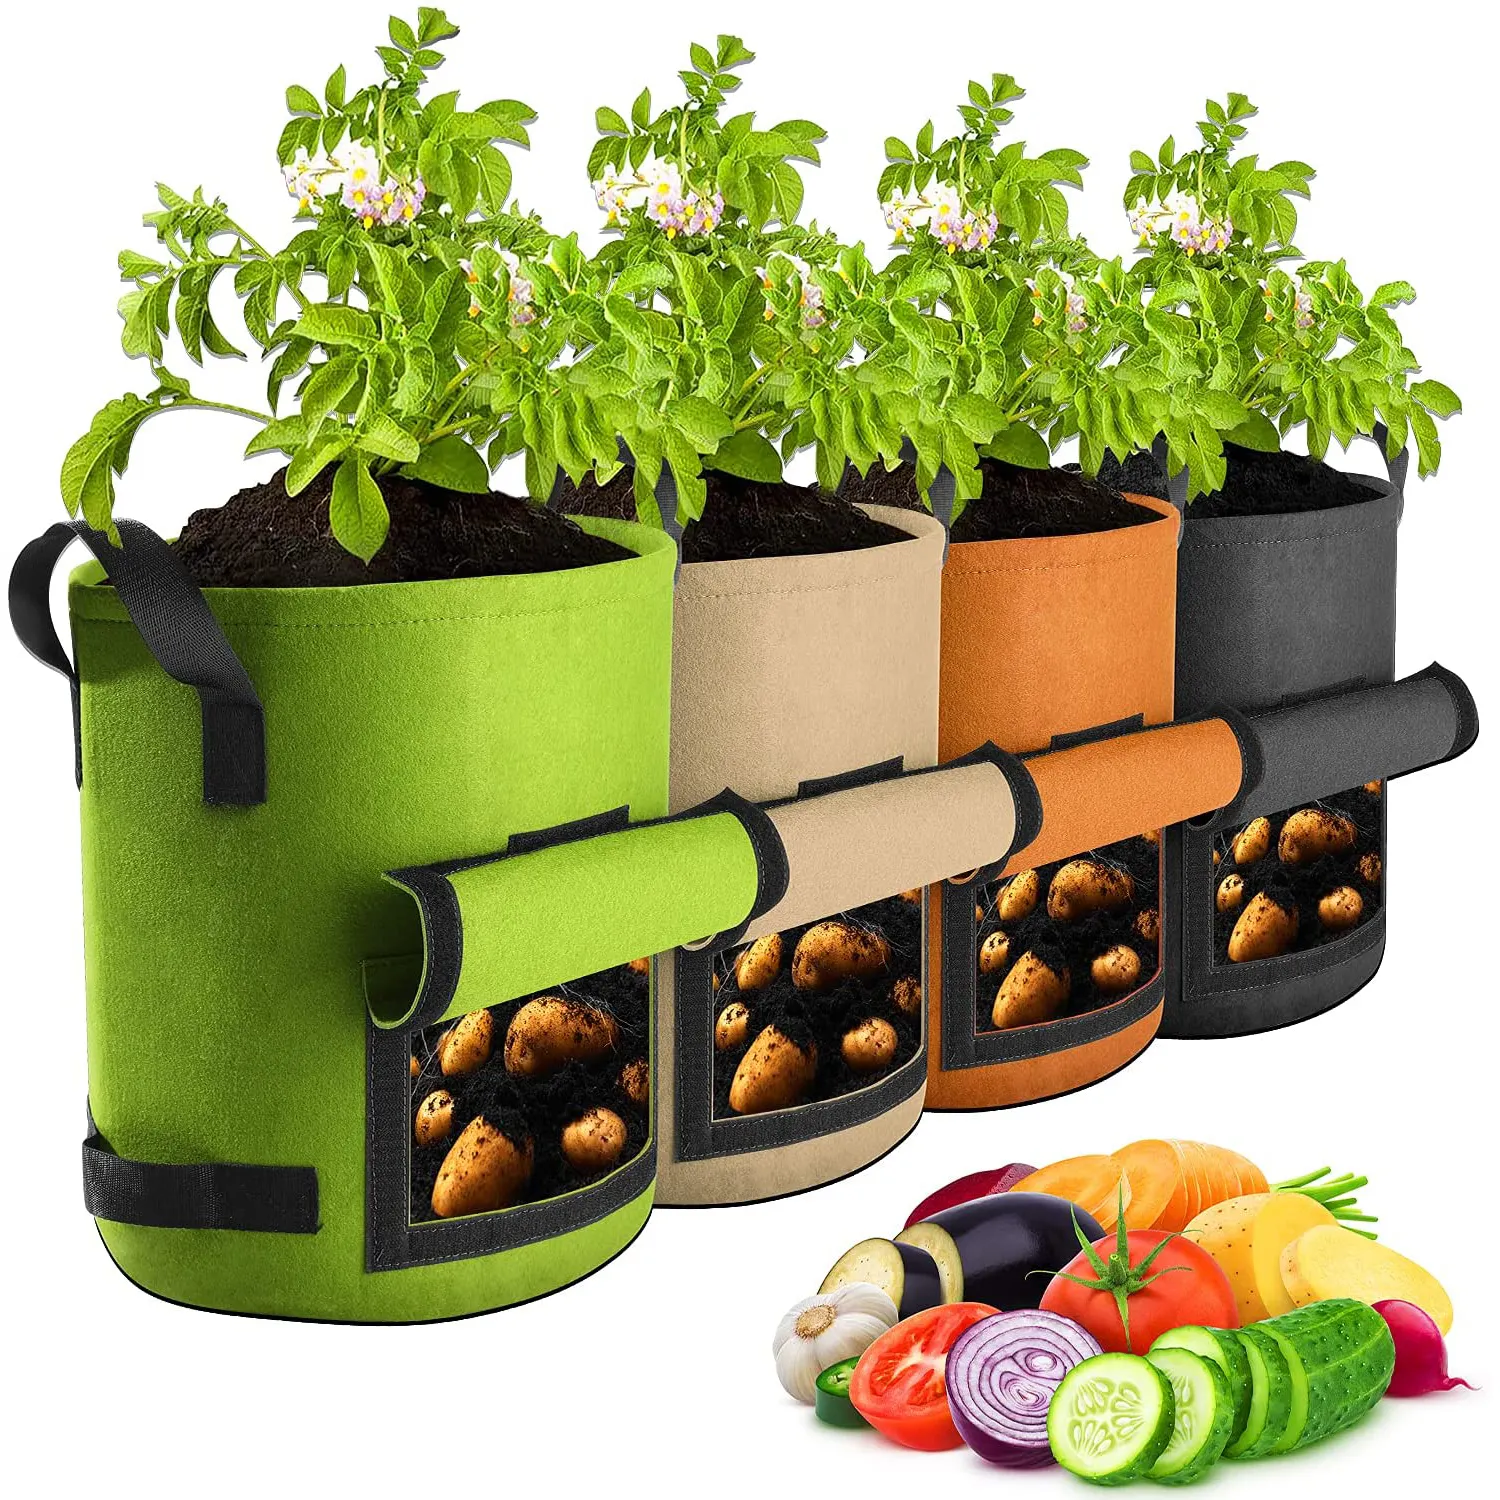 Bac de culture pour pommes de terre, pot de jardin en tissu non tissé, plantation de légumes, 7 gallons, pièces